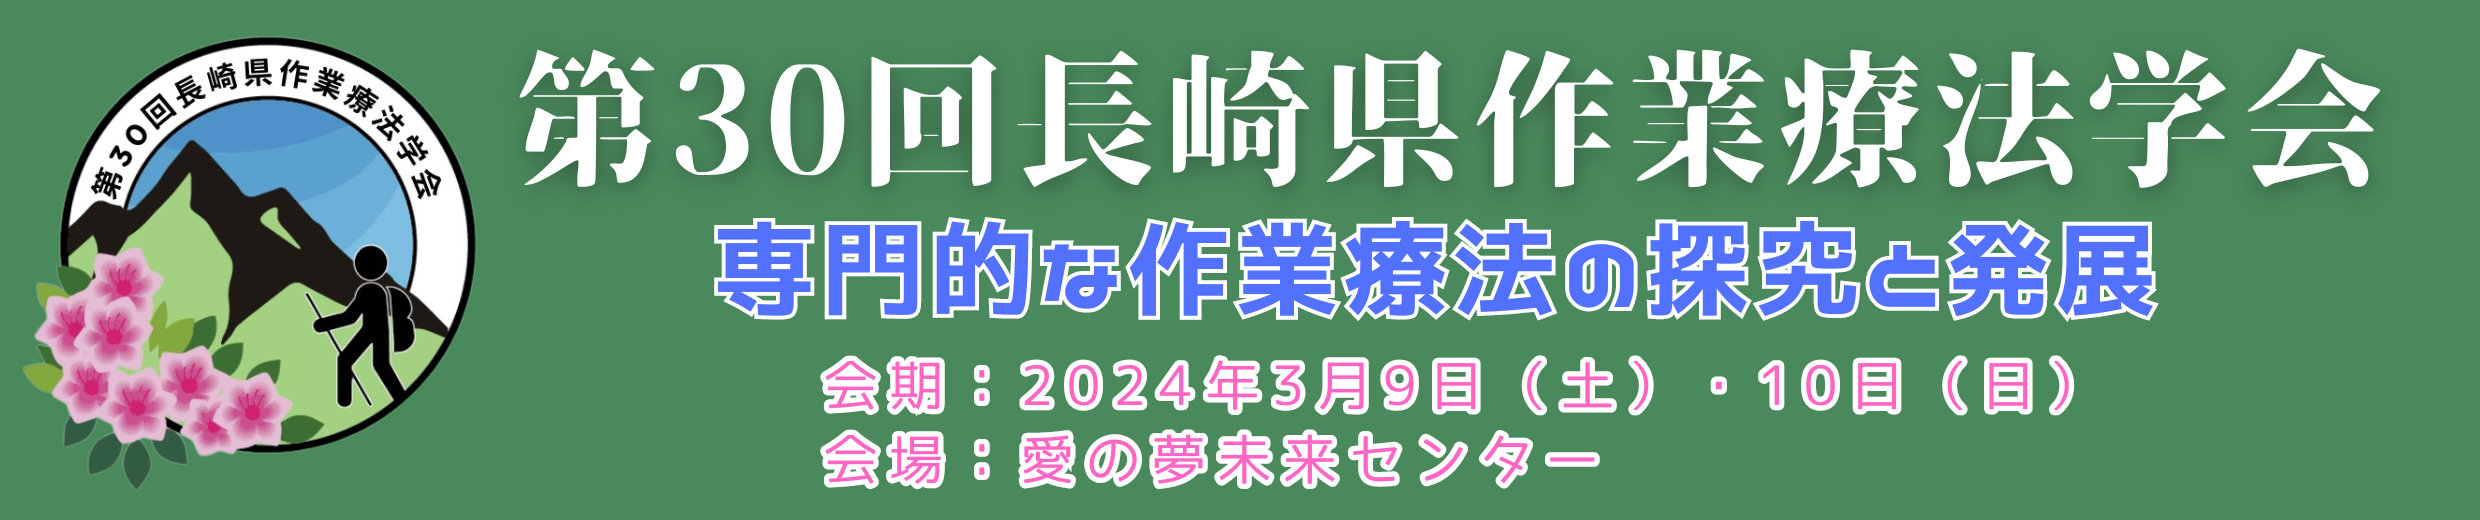 第30回長崎県作業療法士学会